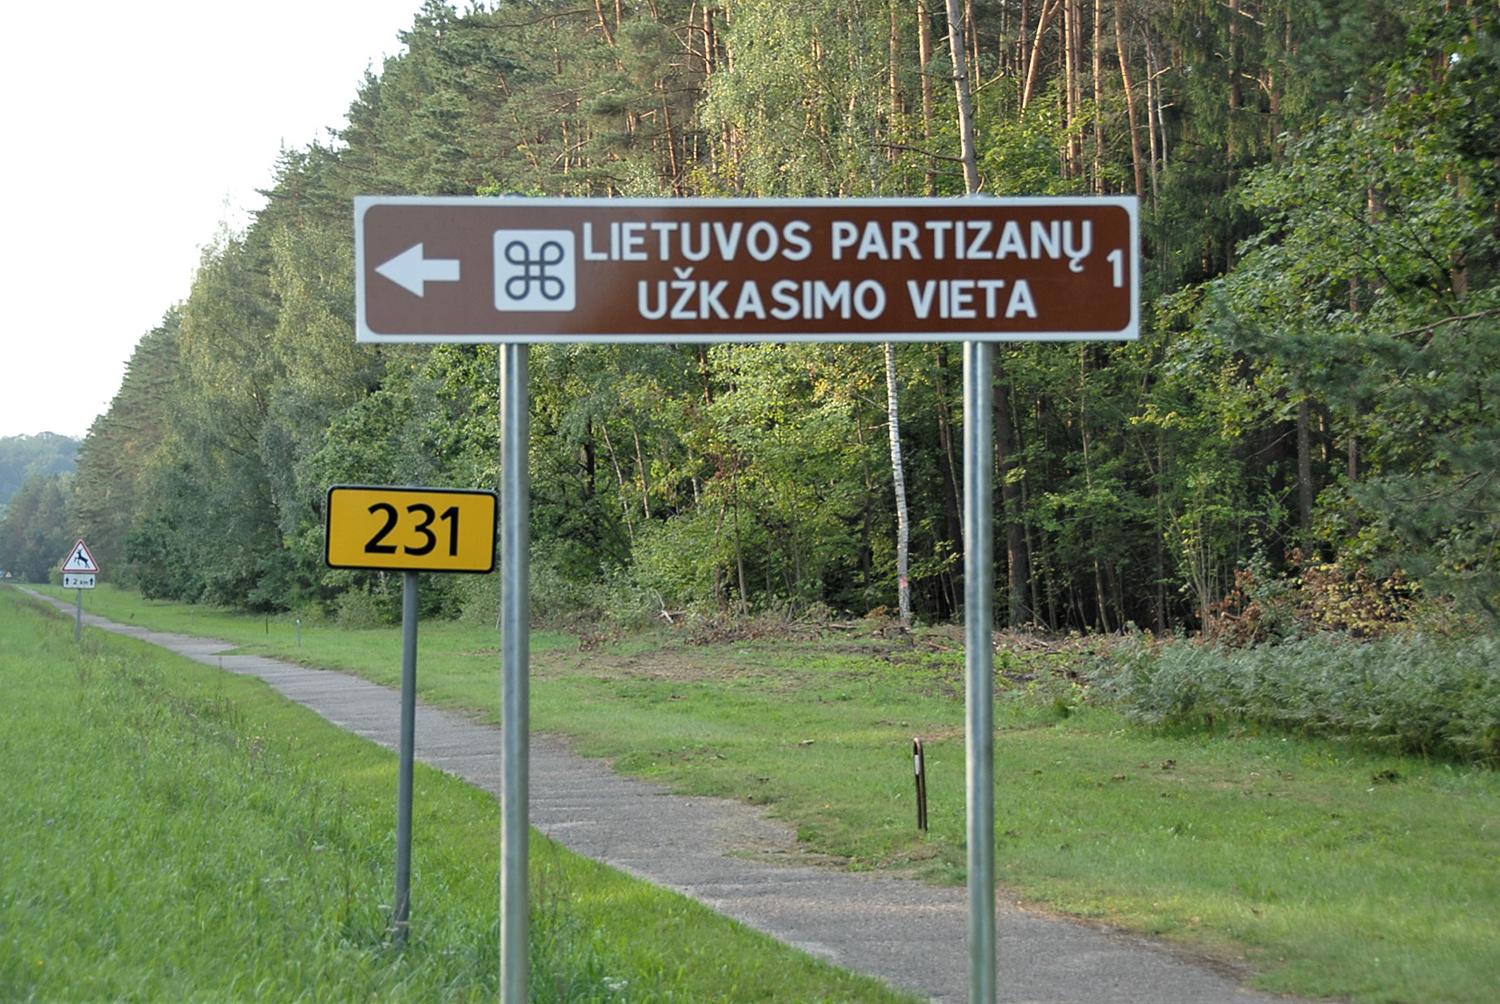 Papiktino atmintinos vietos pavadinimas / Gedimino Nemunaičio nuotr. Naujas kelio ženklas žymi dramatiško istorinio laikmečio įvykius.